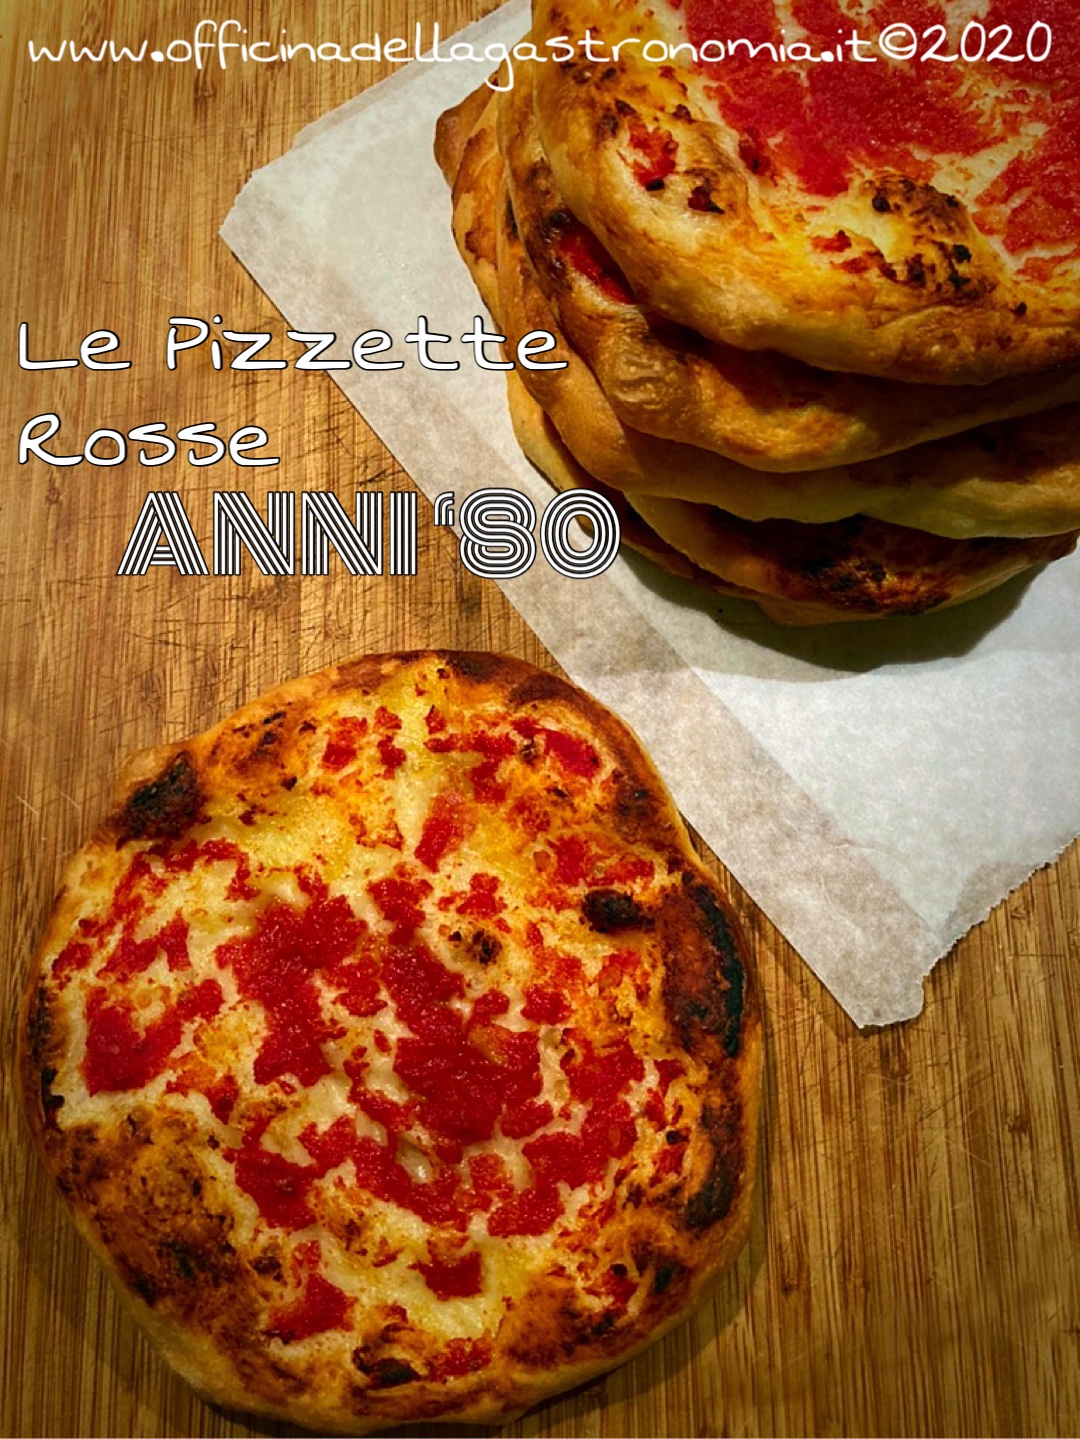 Pizzette del Forno Anni ‘80